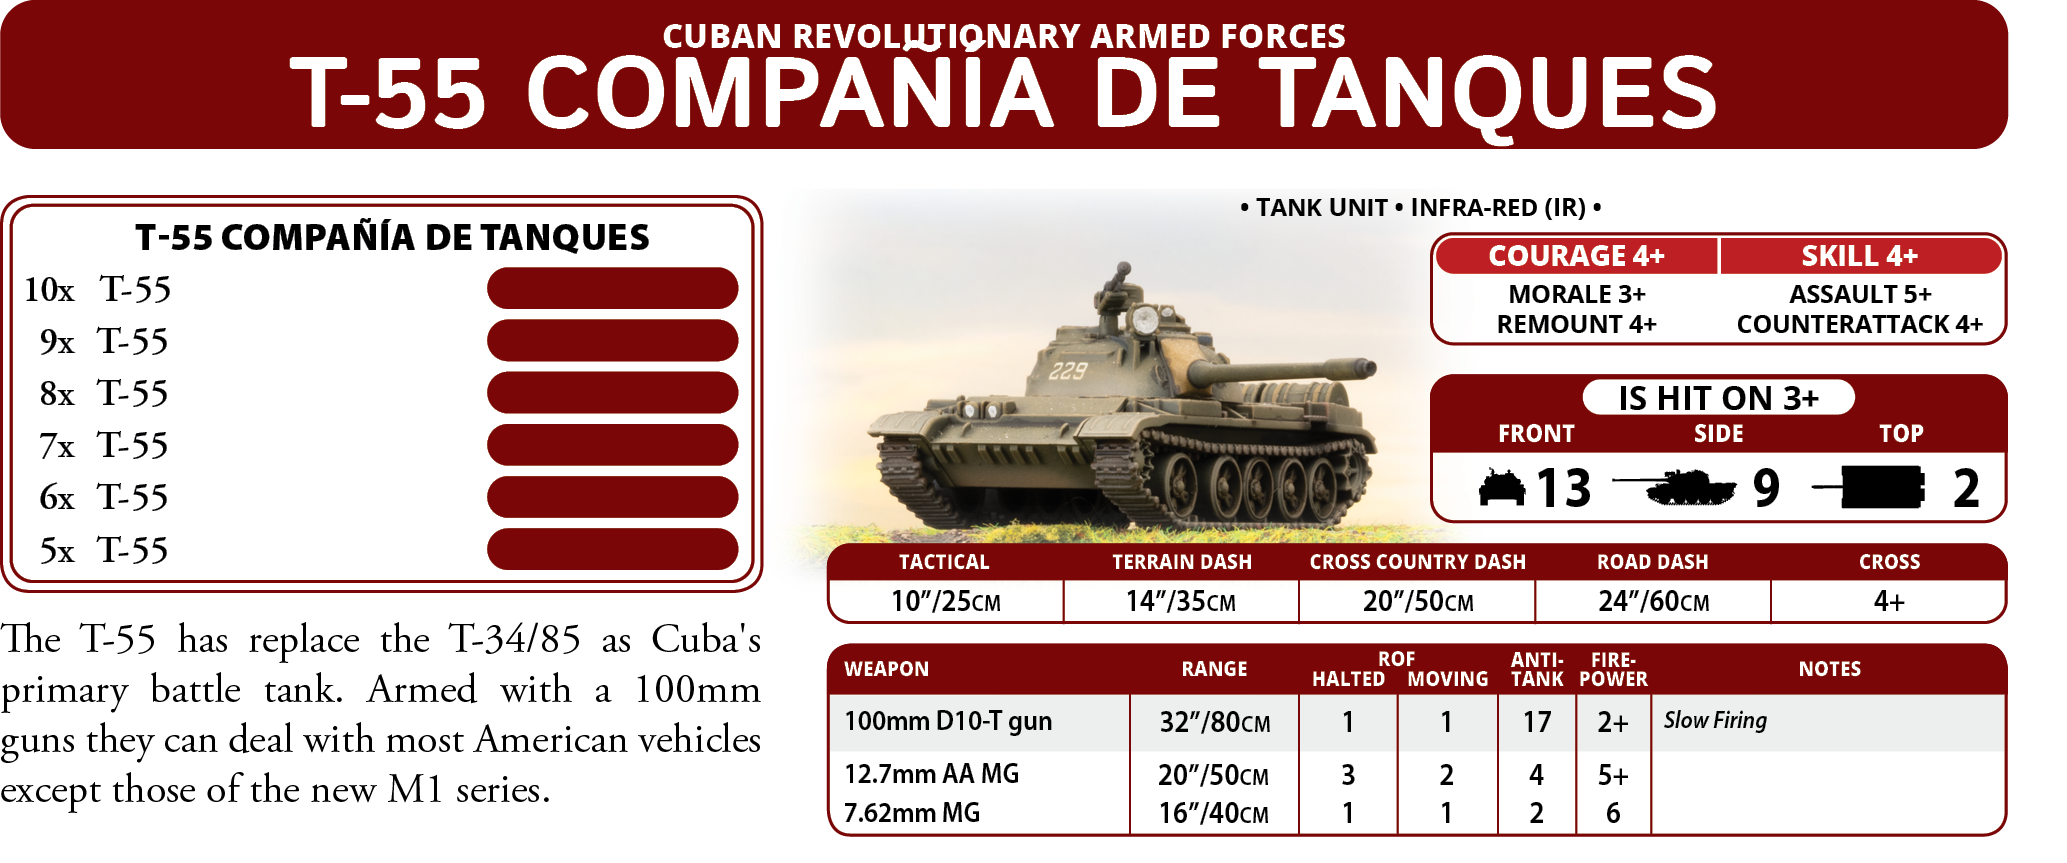 T-55 Compania de Tanques